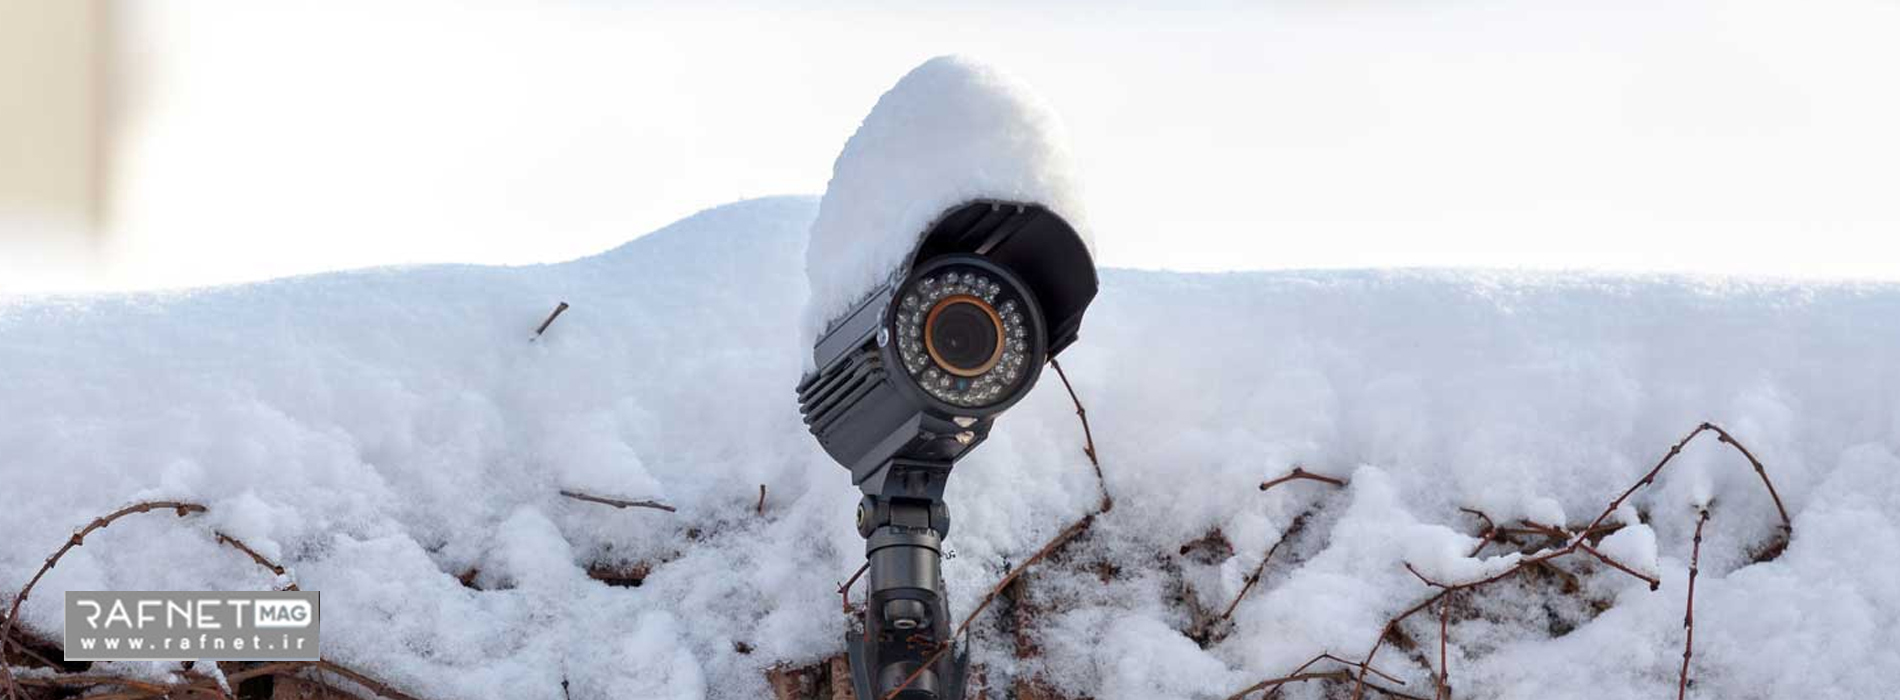 مقاومت دوربین مداربسته در برابر شرایط آب و هوایی